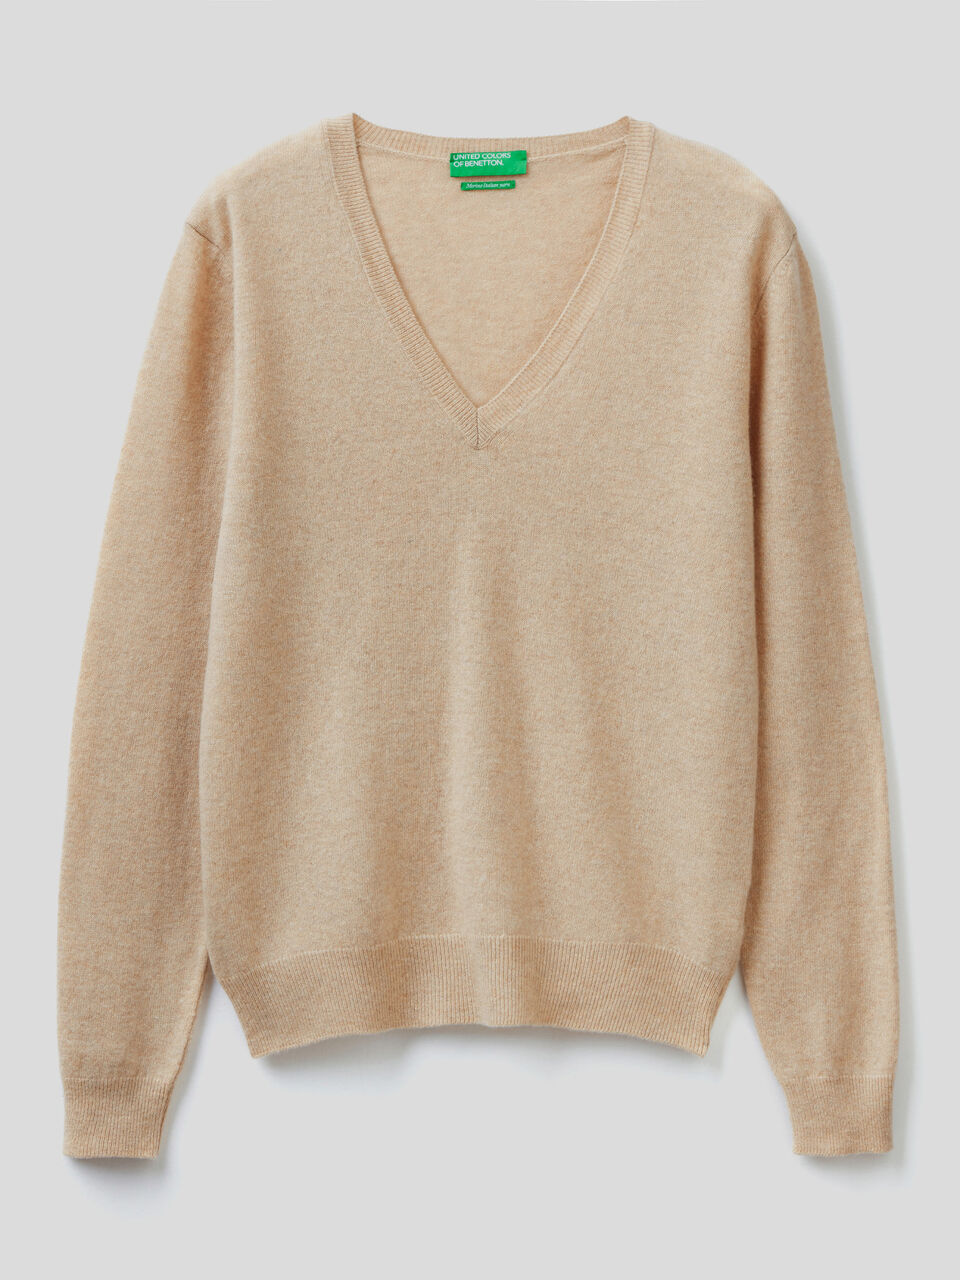 Beige V-neck sweater in pure virgin wool